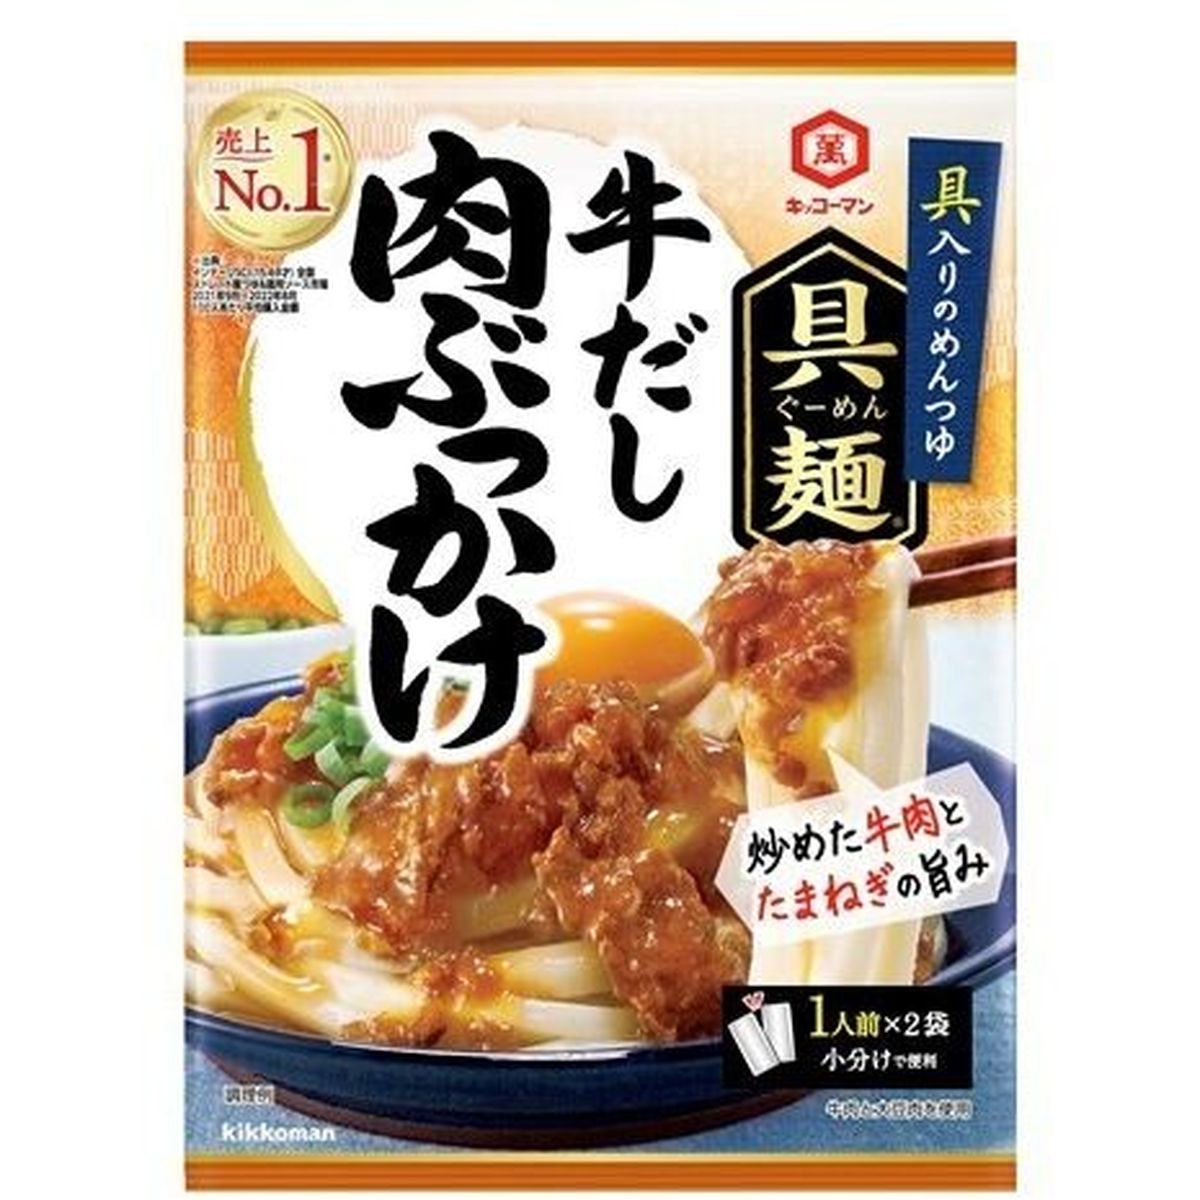 【10個入リ】キッコーマン 具麺 牛ダシ肉ブッカケ 100g